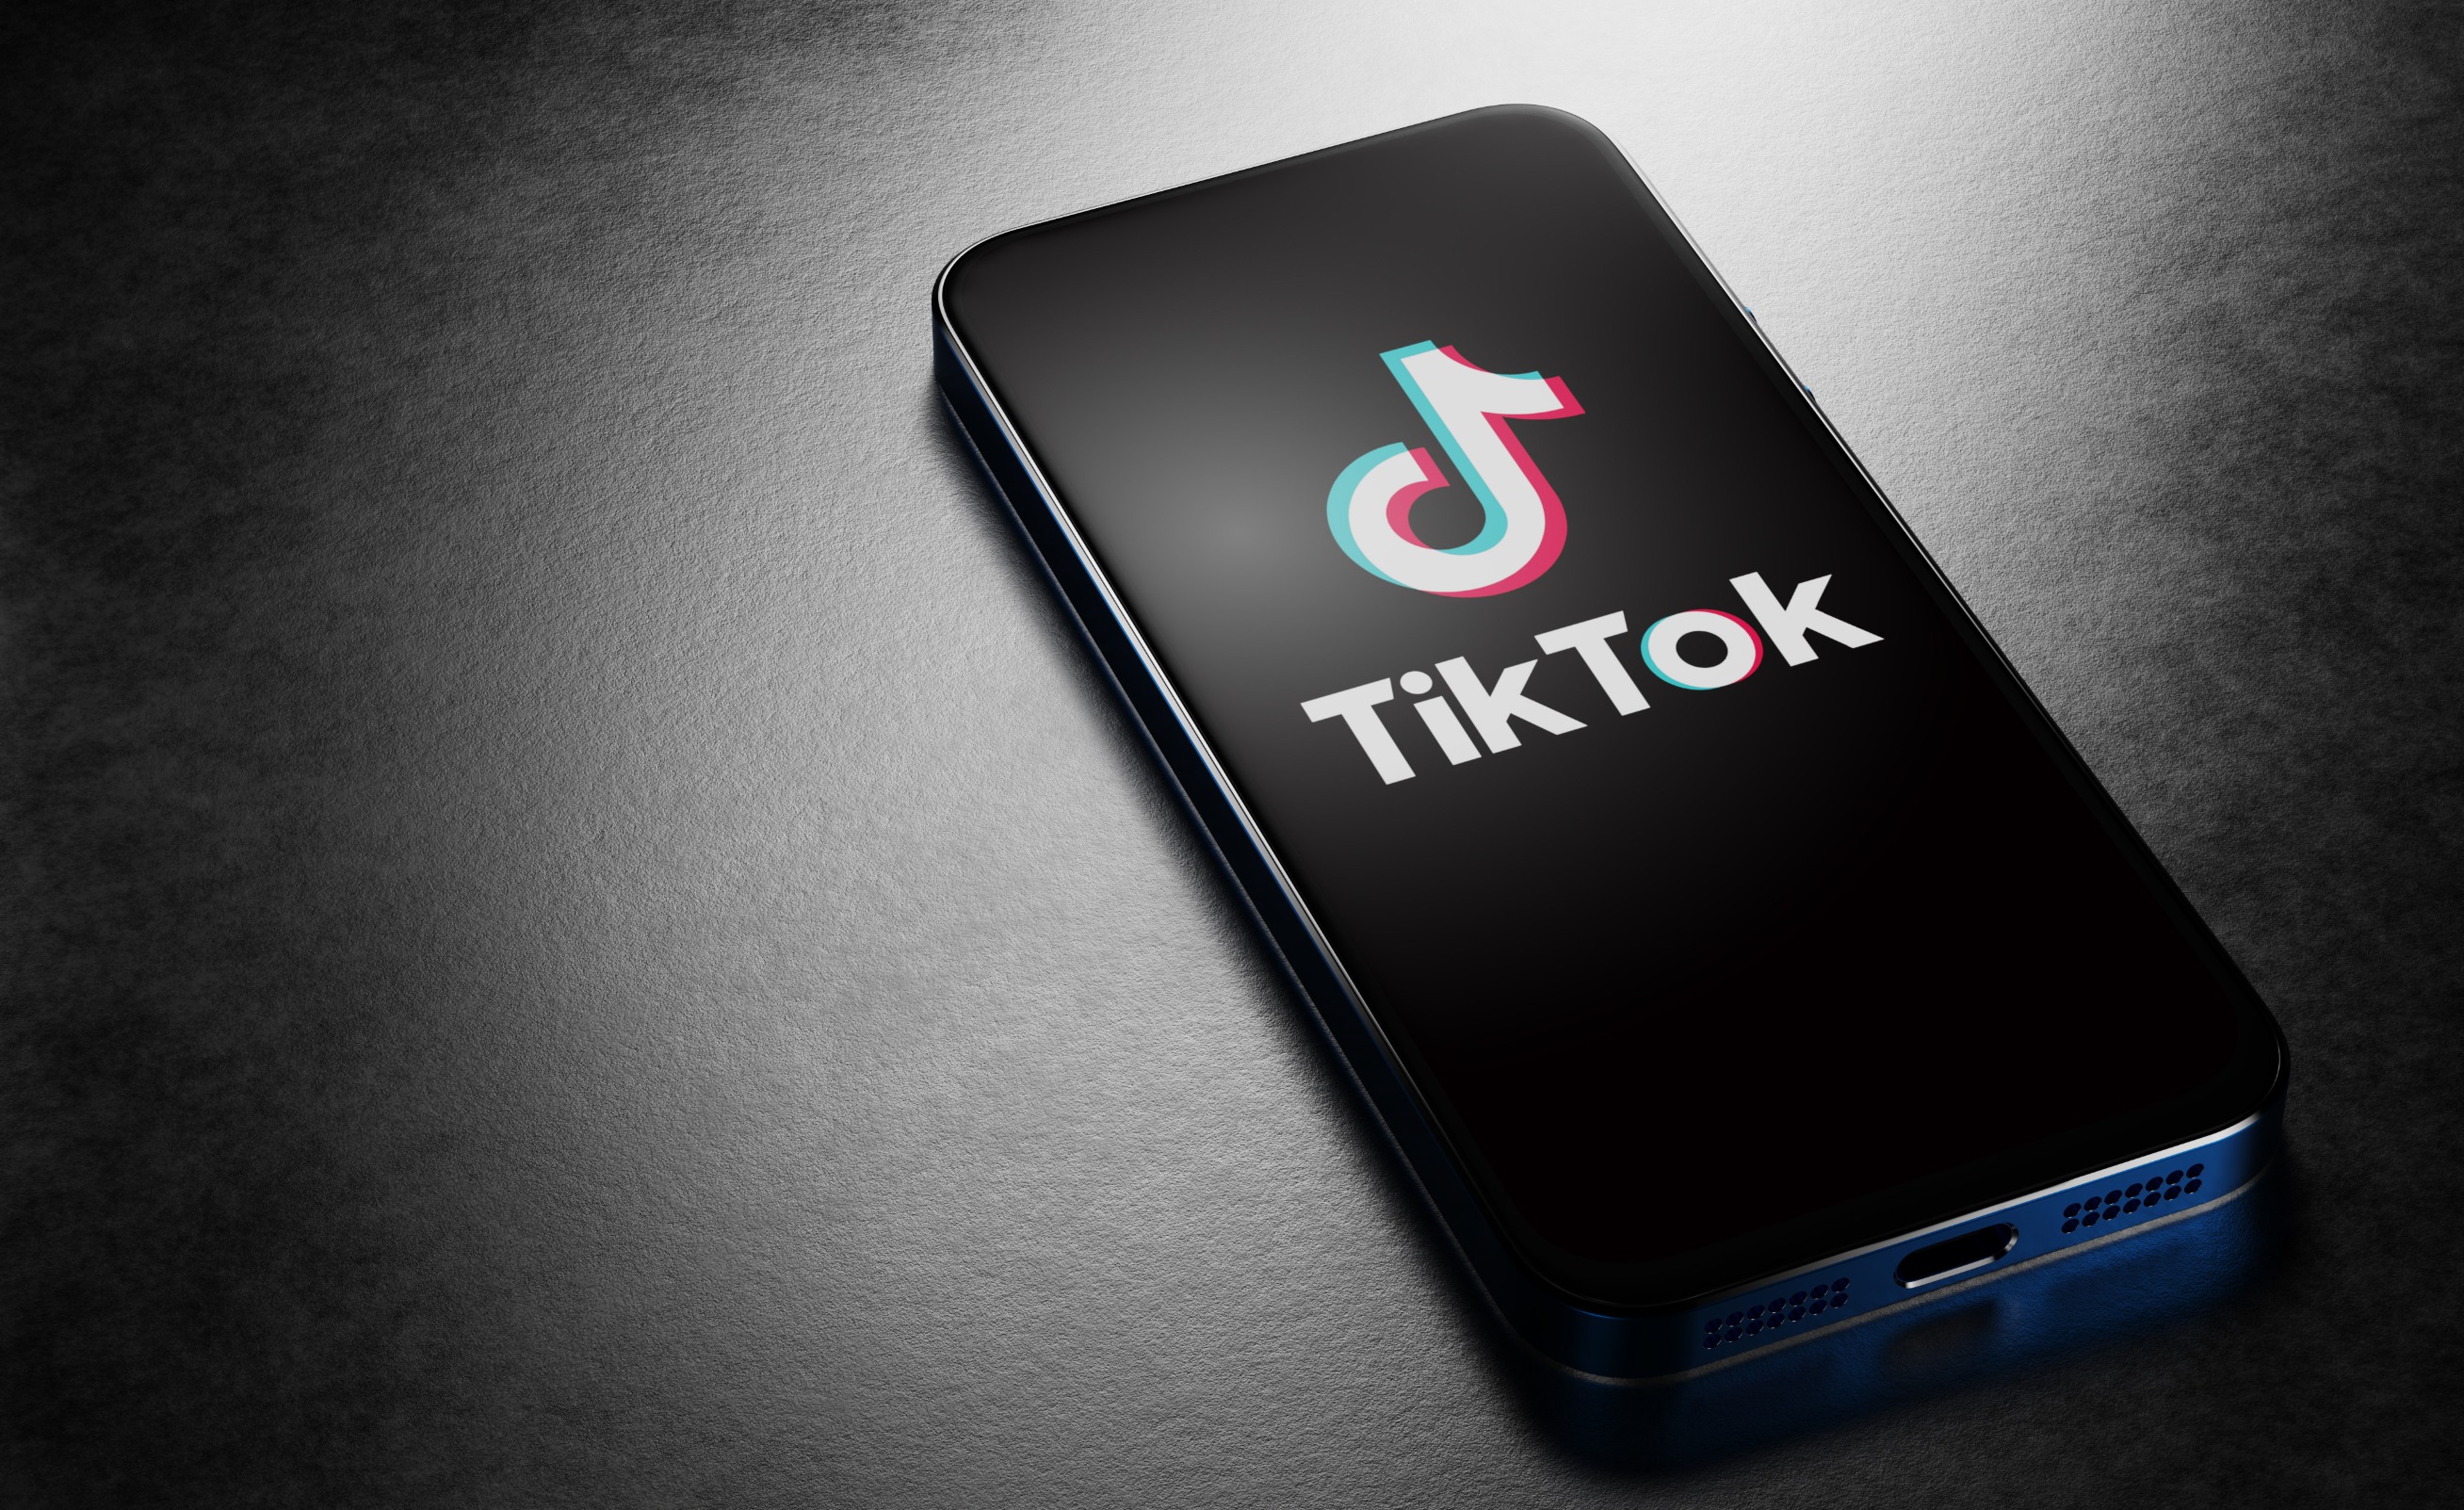 TikTok anunció que comenzaría a implementar límites de tiempo de pantalla para usuarios menores de 18 años. ¿Será bien para la salud mental?